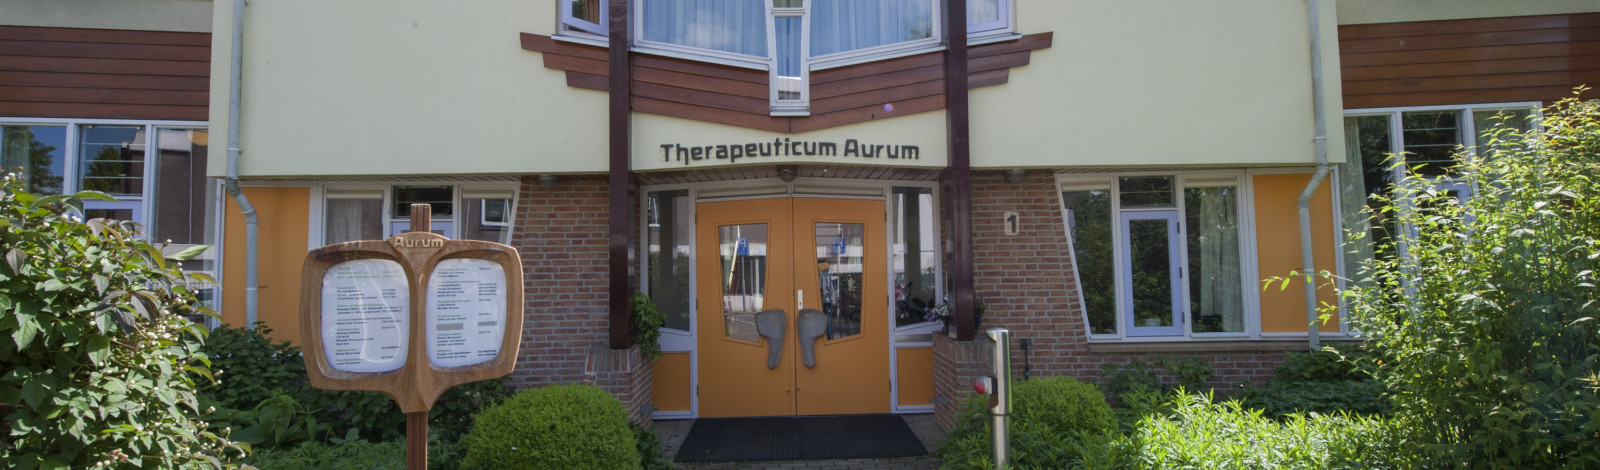 Buitenzijde gebouw Therapeuticum Aurum